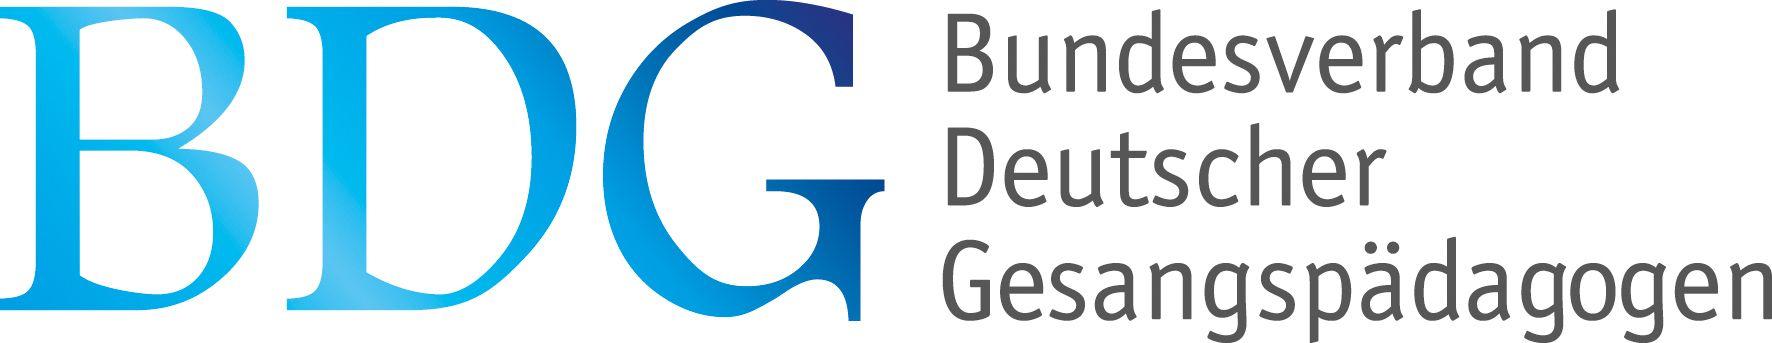 Bundesverband Deutscher Gesangspädagogen - Link Logo - Vocal Success Studio - Judith Janzen